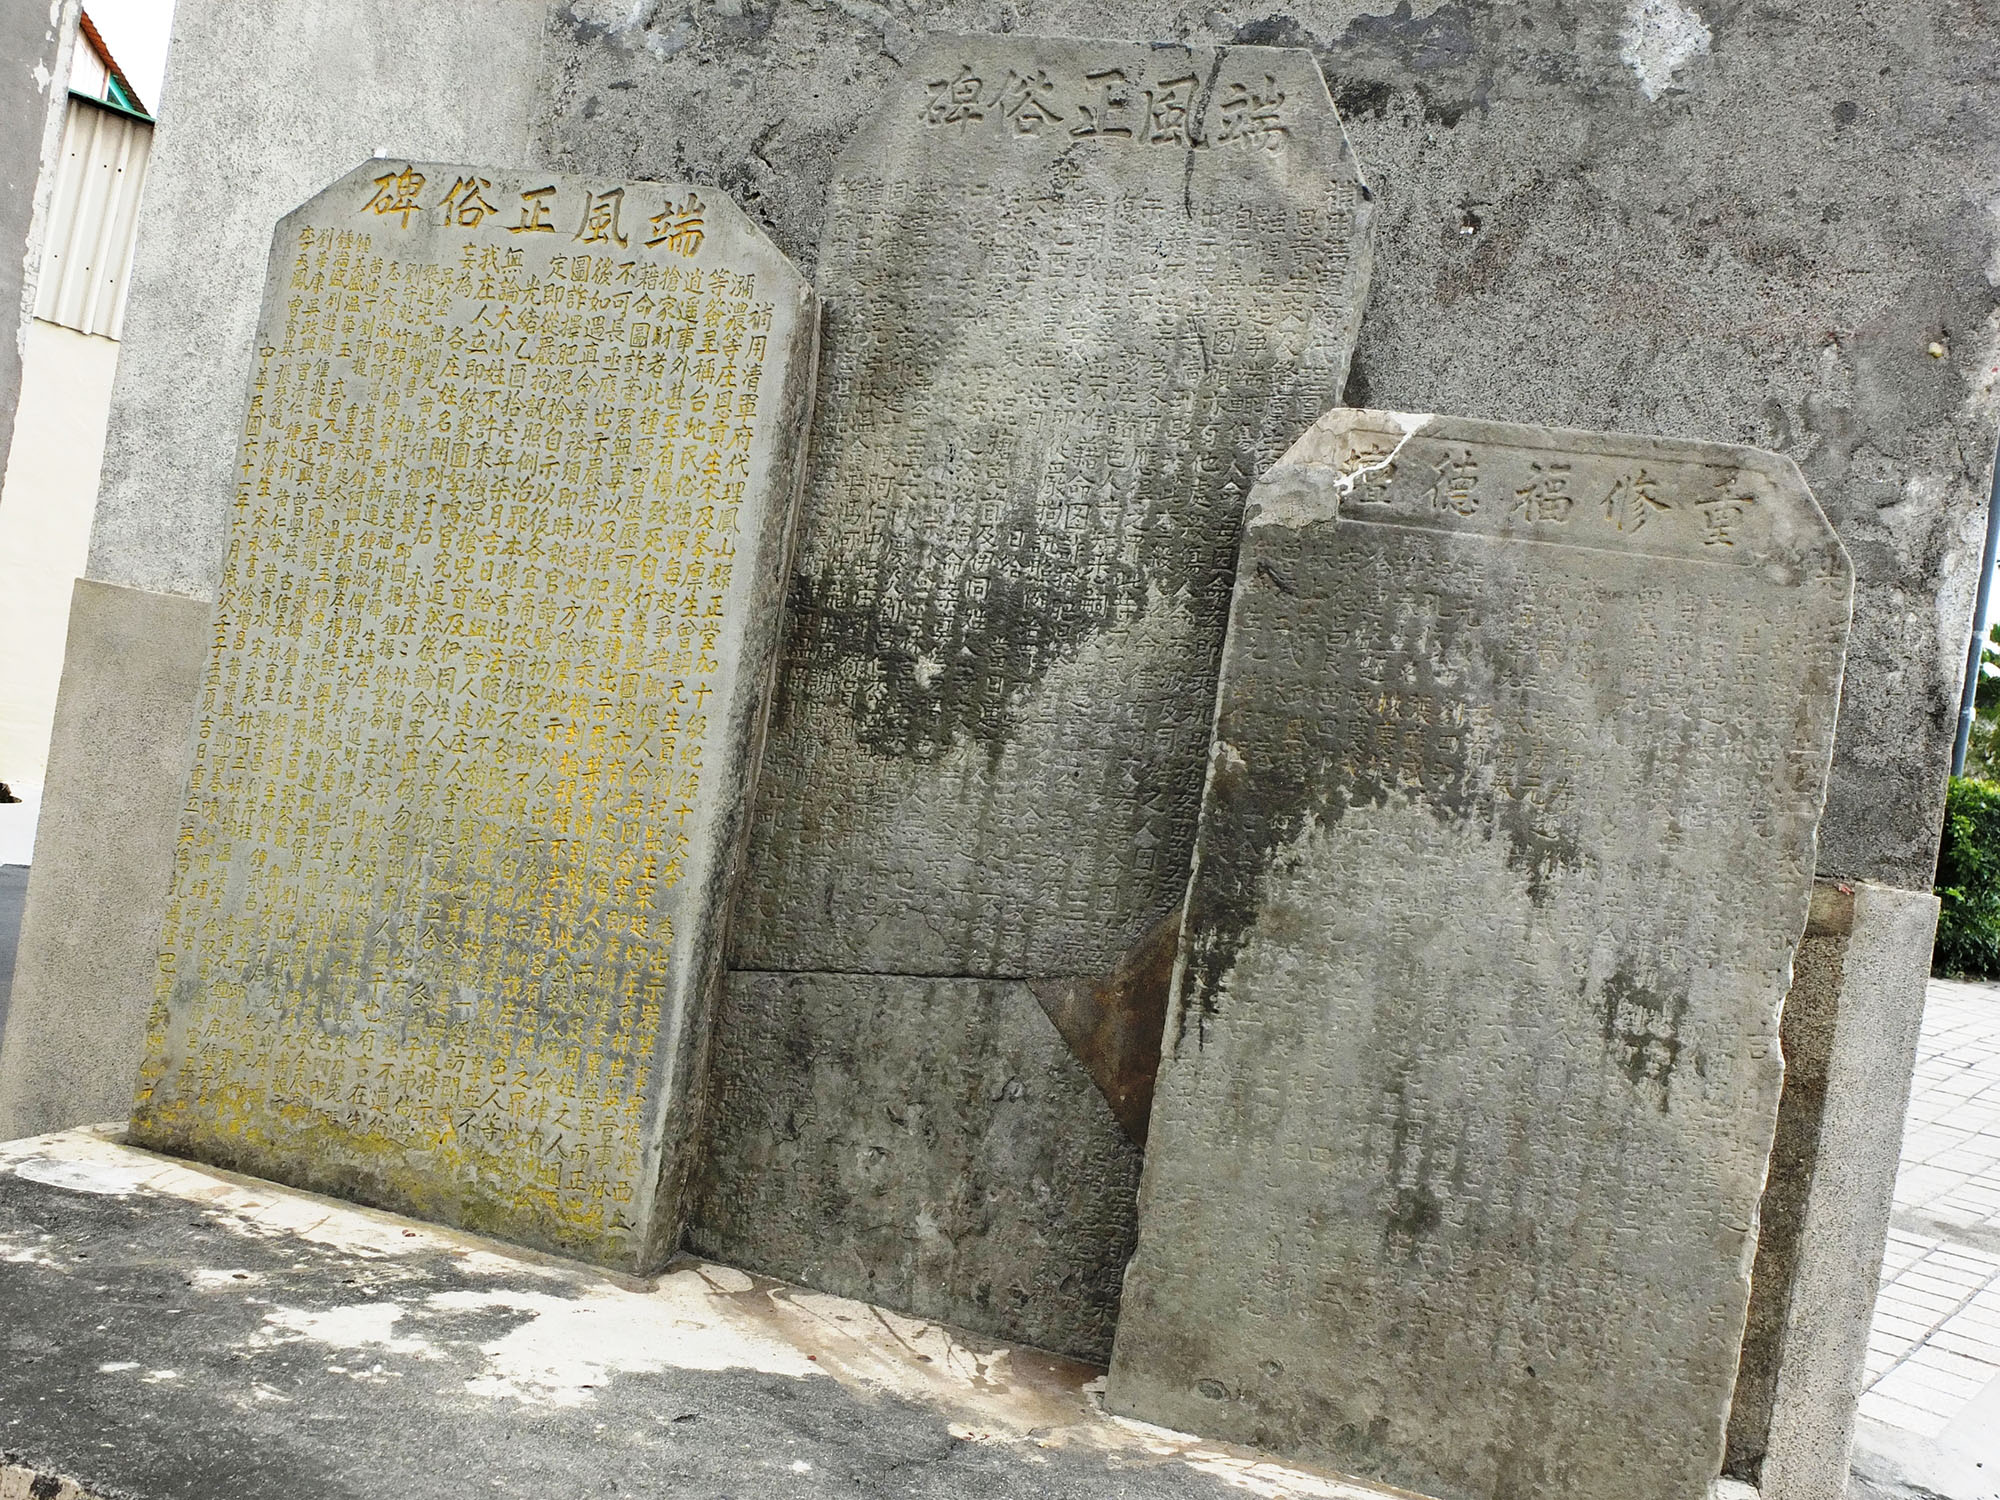 「端正風俗牌」と「重修福德壇」の二つの石碑